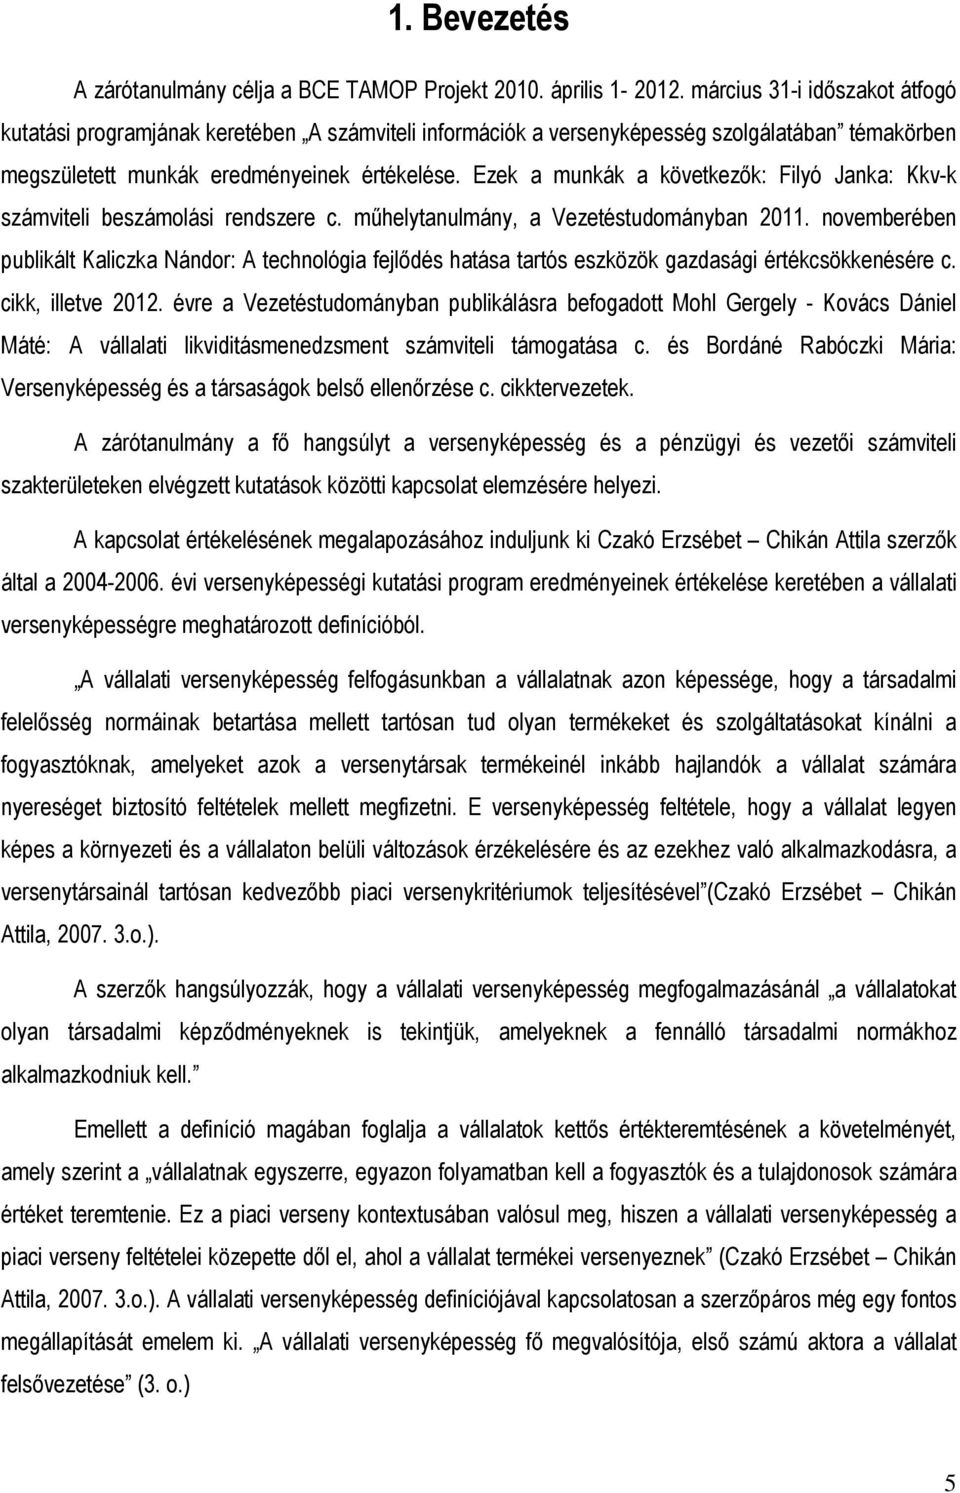 Ezek a munkák a következık: Filyó Janka: Kkv-k számviteli beszámolási rendszere c. mőhelytanulmány, a Vezetéstudományban 2011.